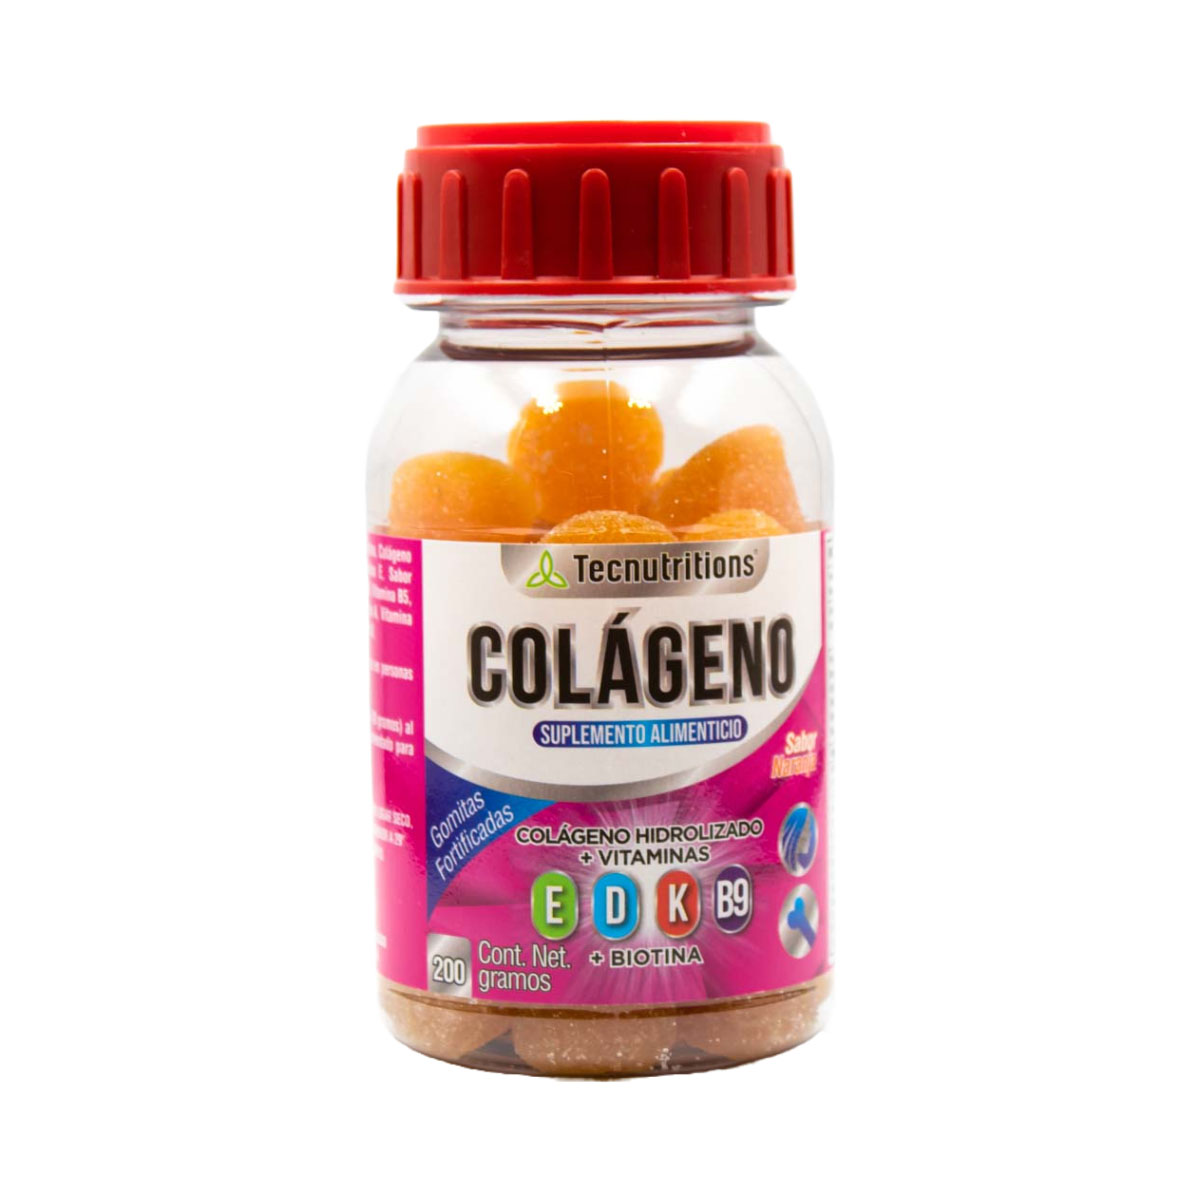 Collagen gummies with vitamins, minerals and antioxidants, Collagen, 200 gr